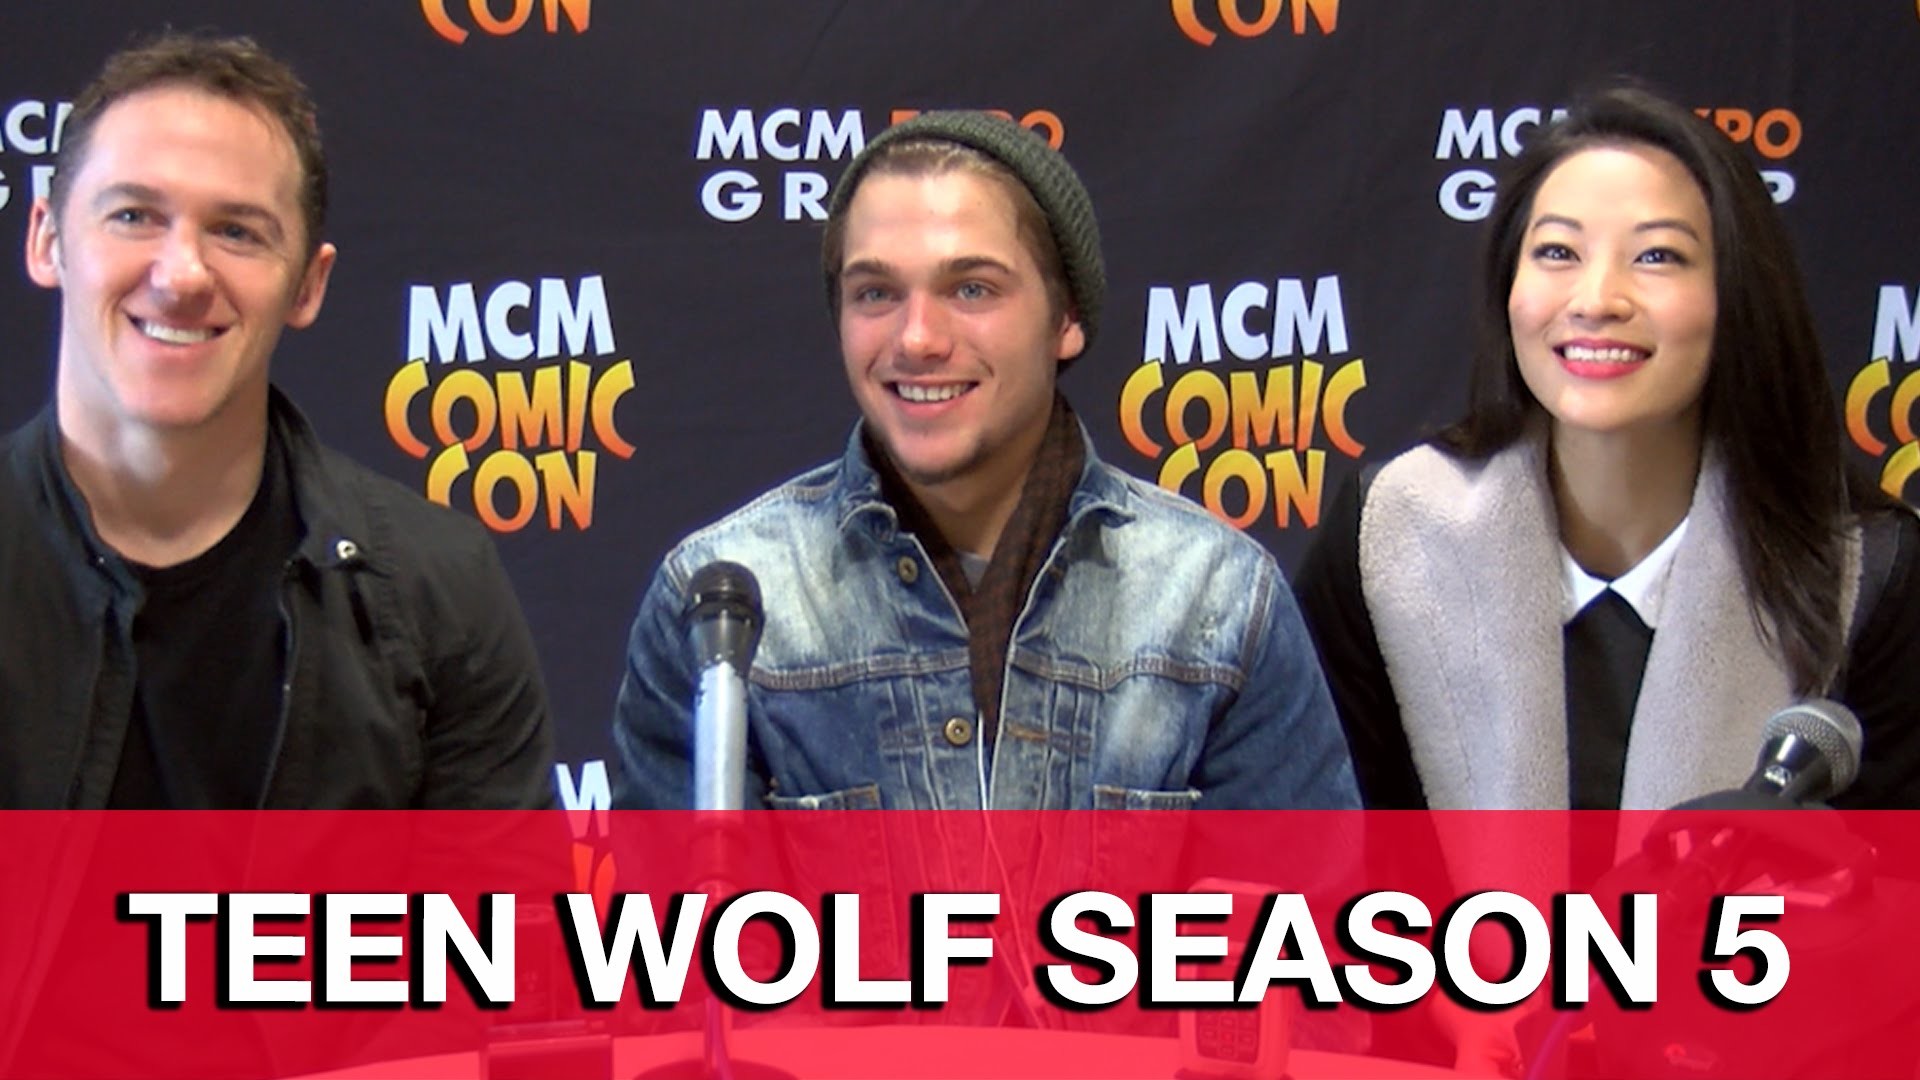 1920x1080 Teen Wolf Season 5 Interview - Arden Cho, Dylan Sprayberry & Jeff Davis -  YouTube